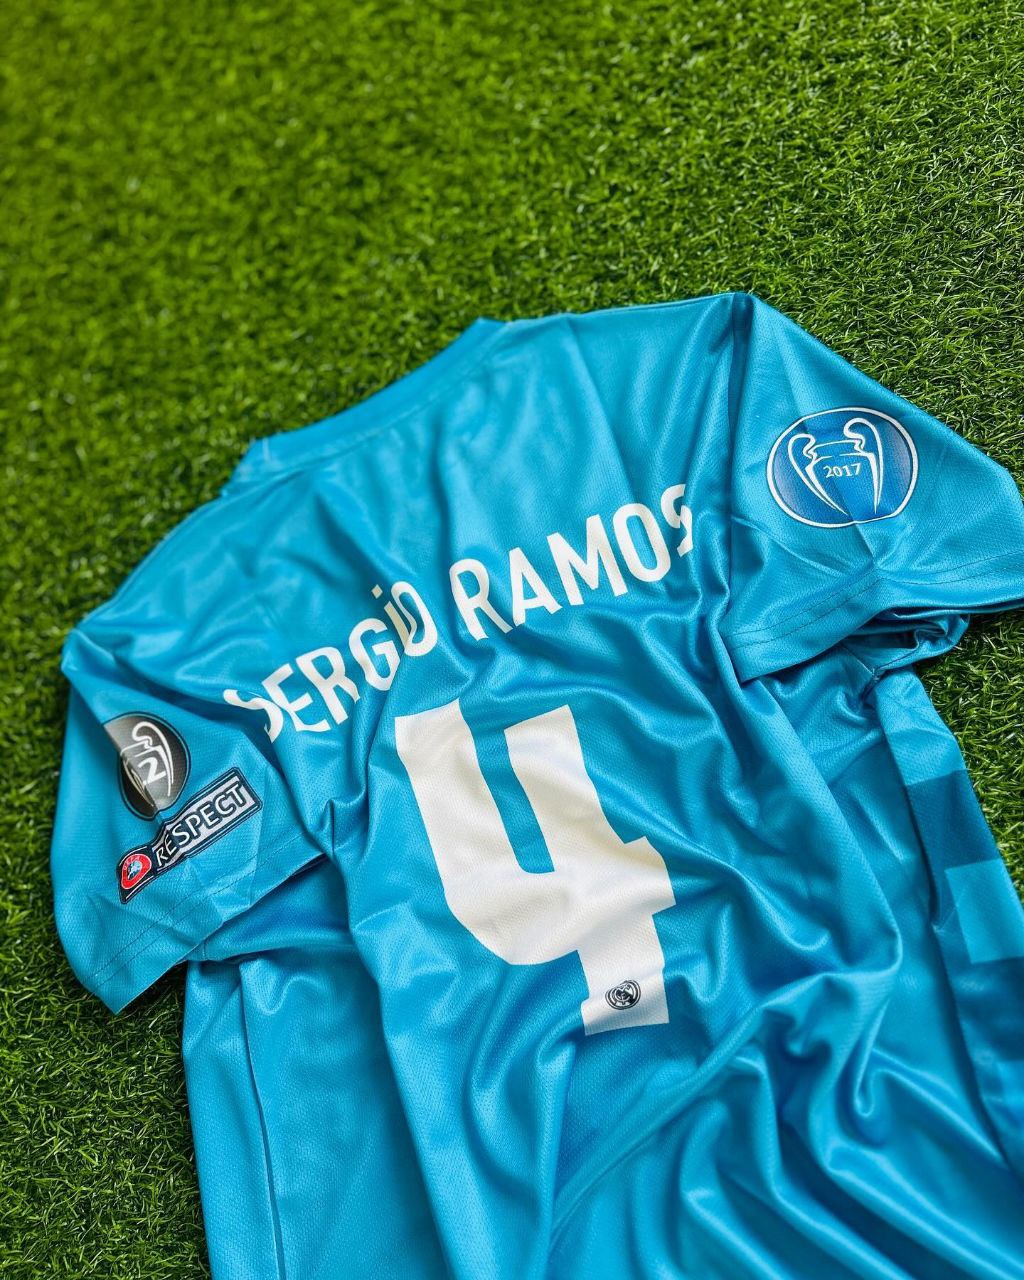 Sergio Ramos 2017-18 Real Madrid Retro Jersey